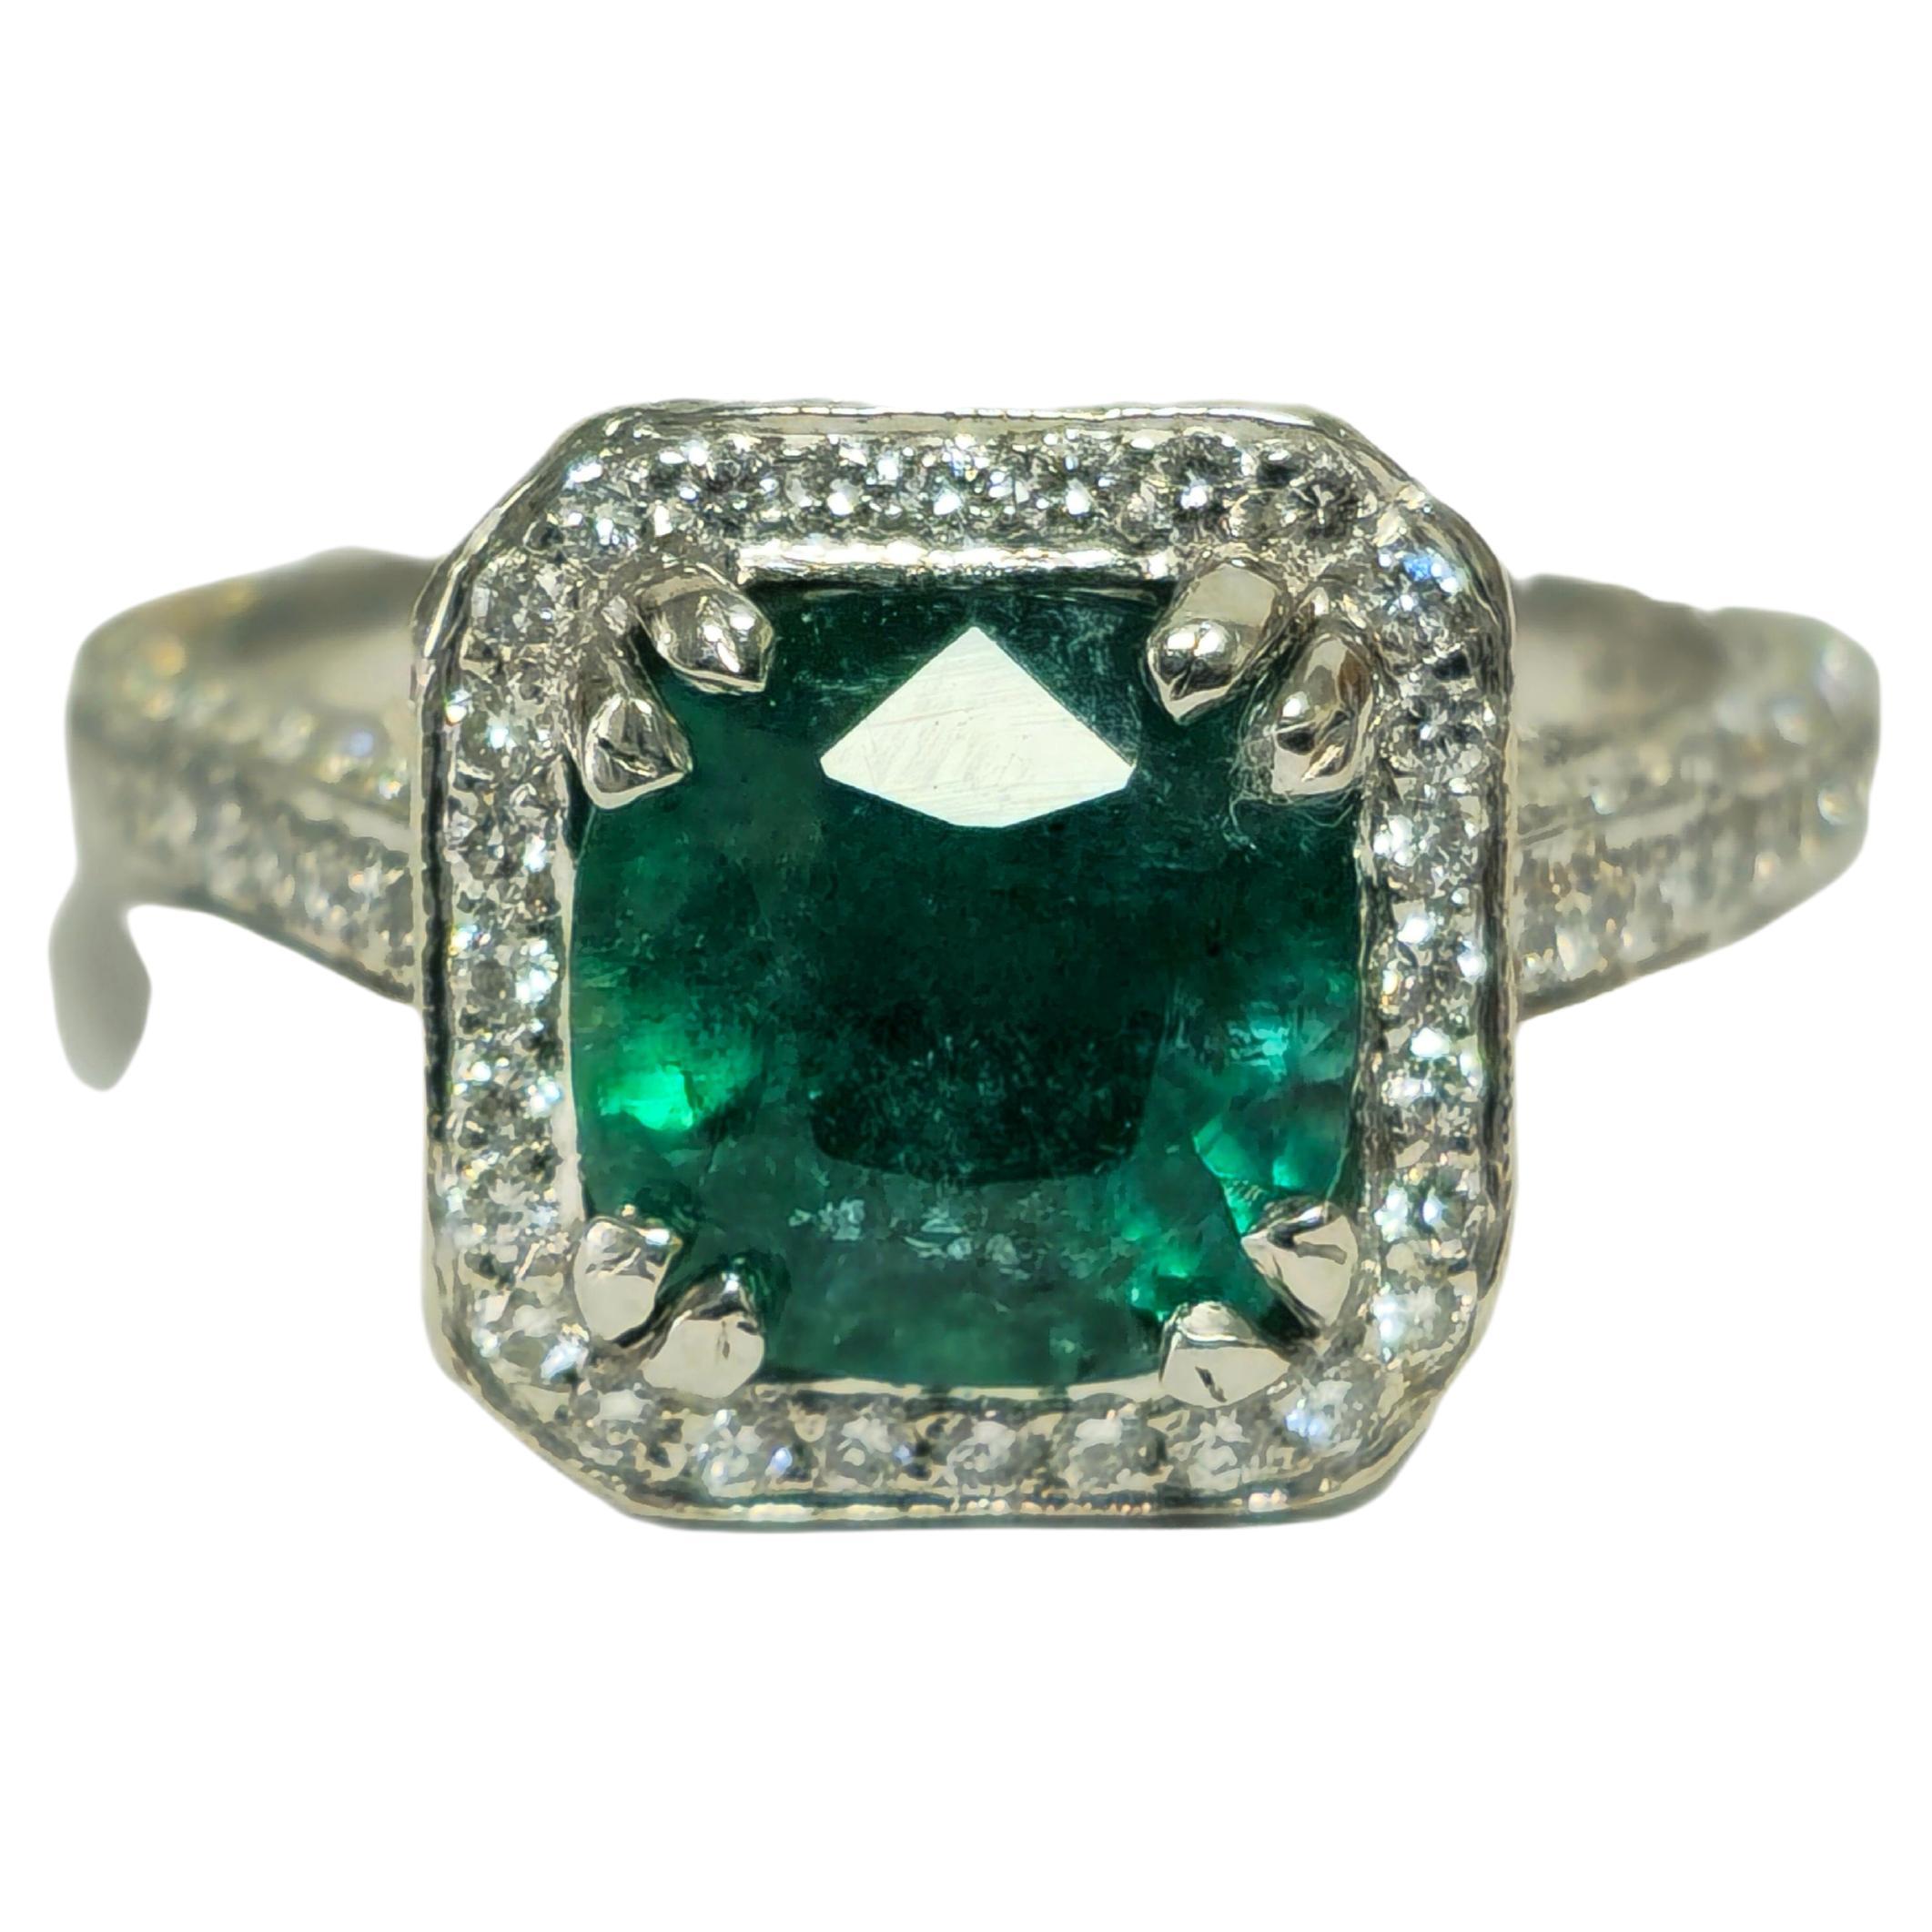 RARE 4ct Natural Emerald & Diamond Engagement Ring in Platinum